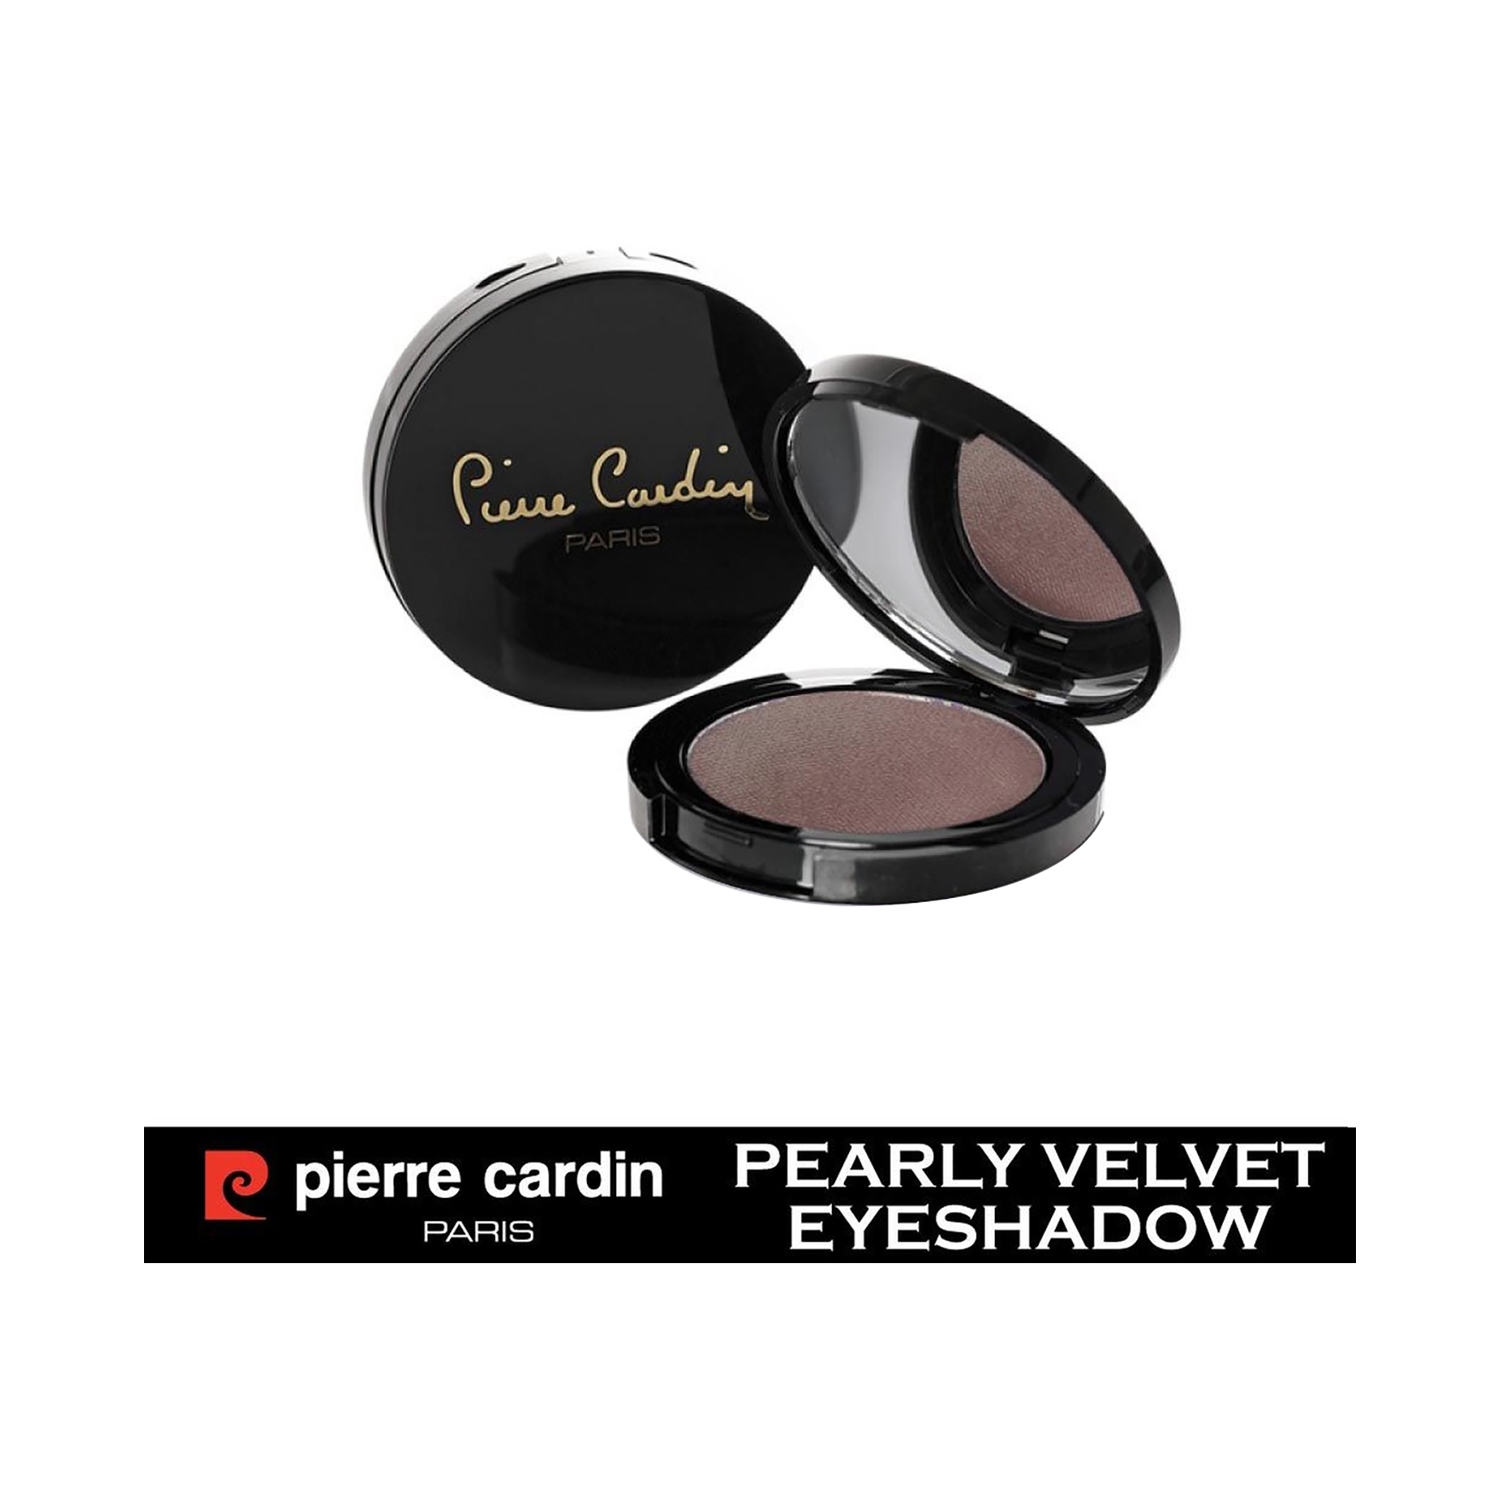 Pierre Cardin Paris | Pierre Cardin Paris Pearly Velvet Eye Shadow - 880 Soft Brown (4g)